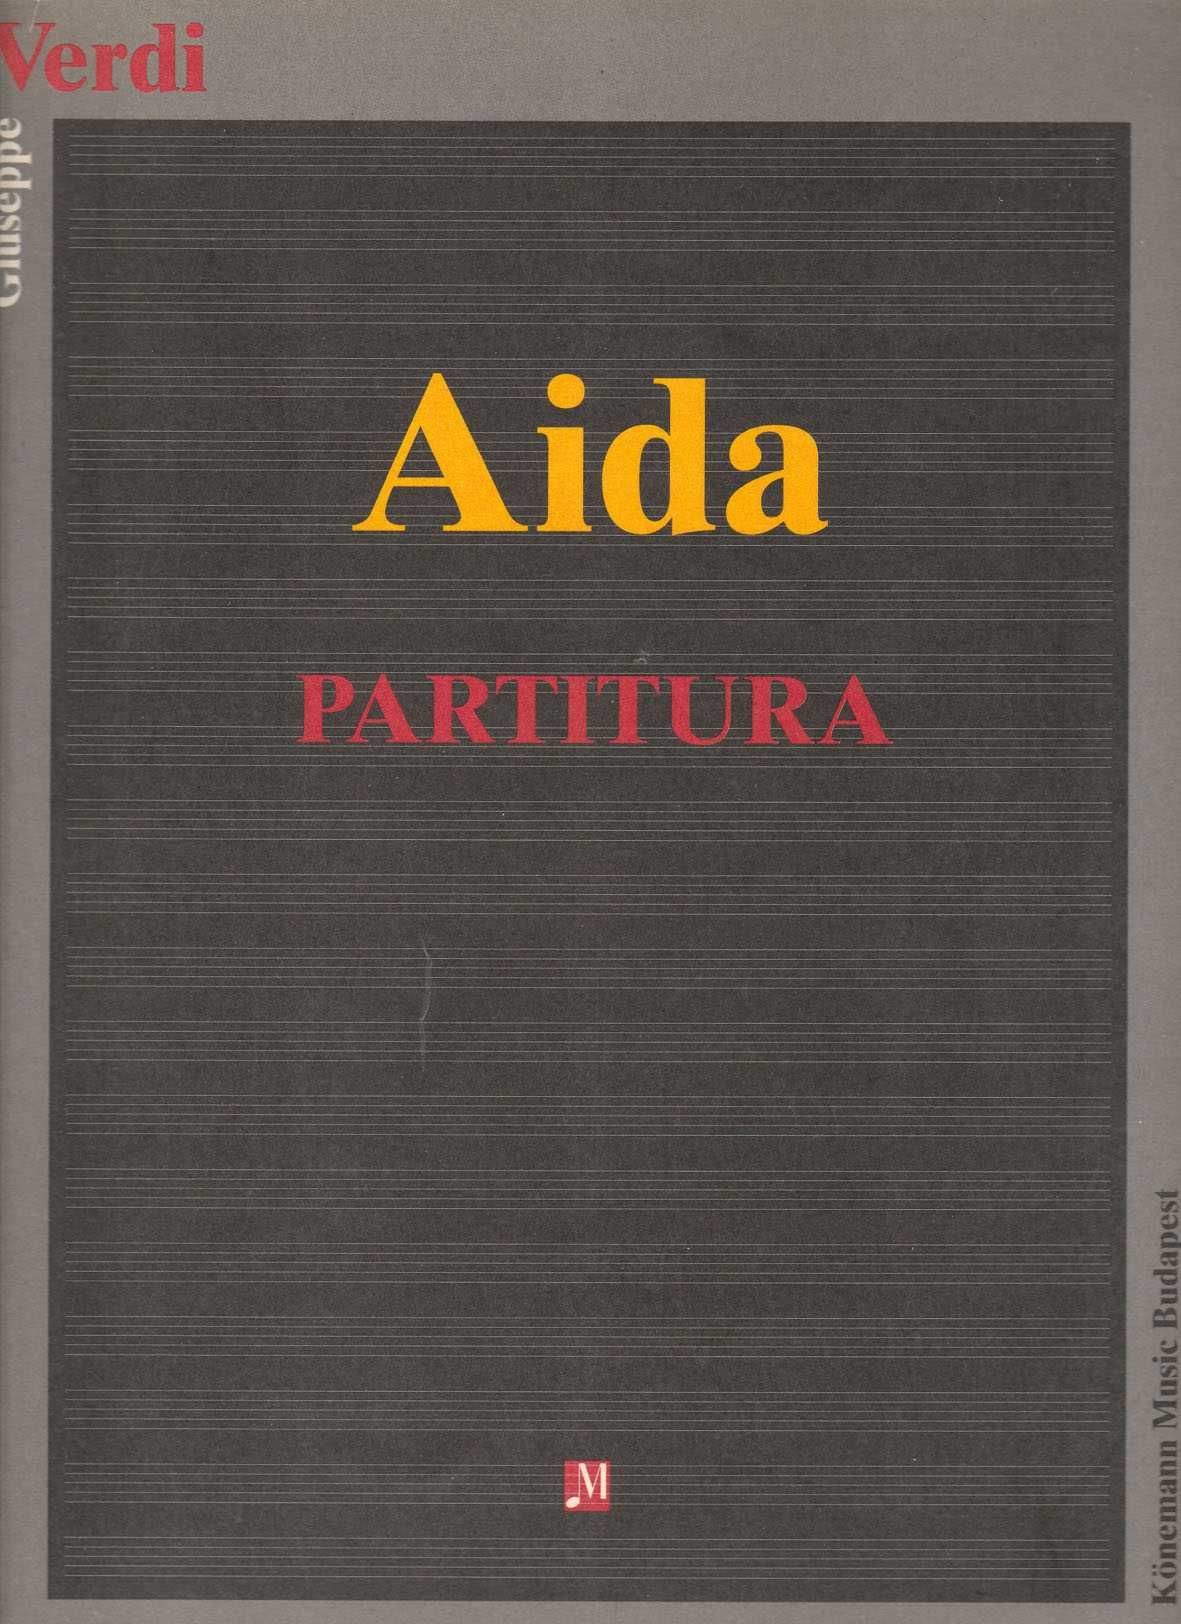 Verdi - Aida - Partitura